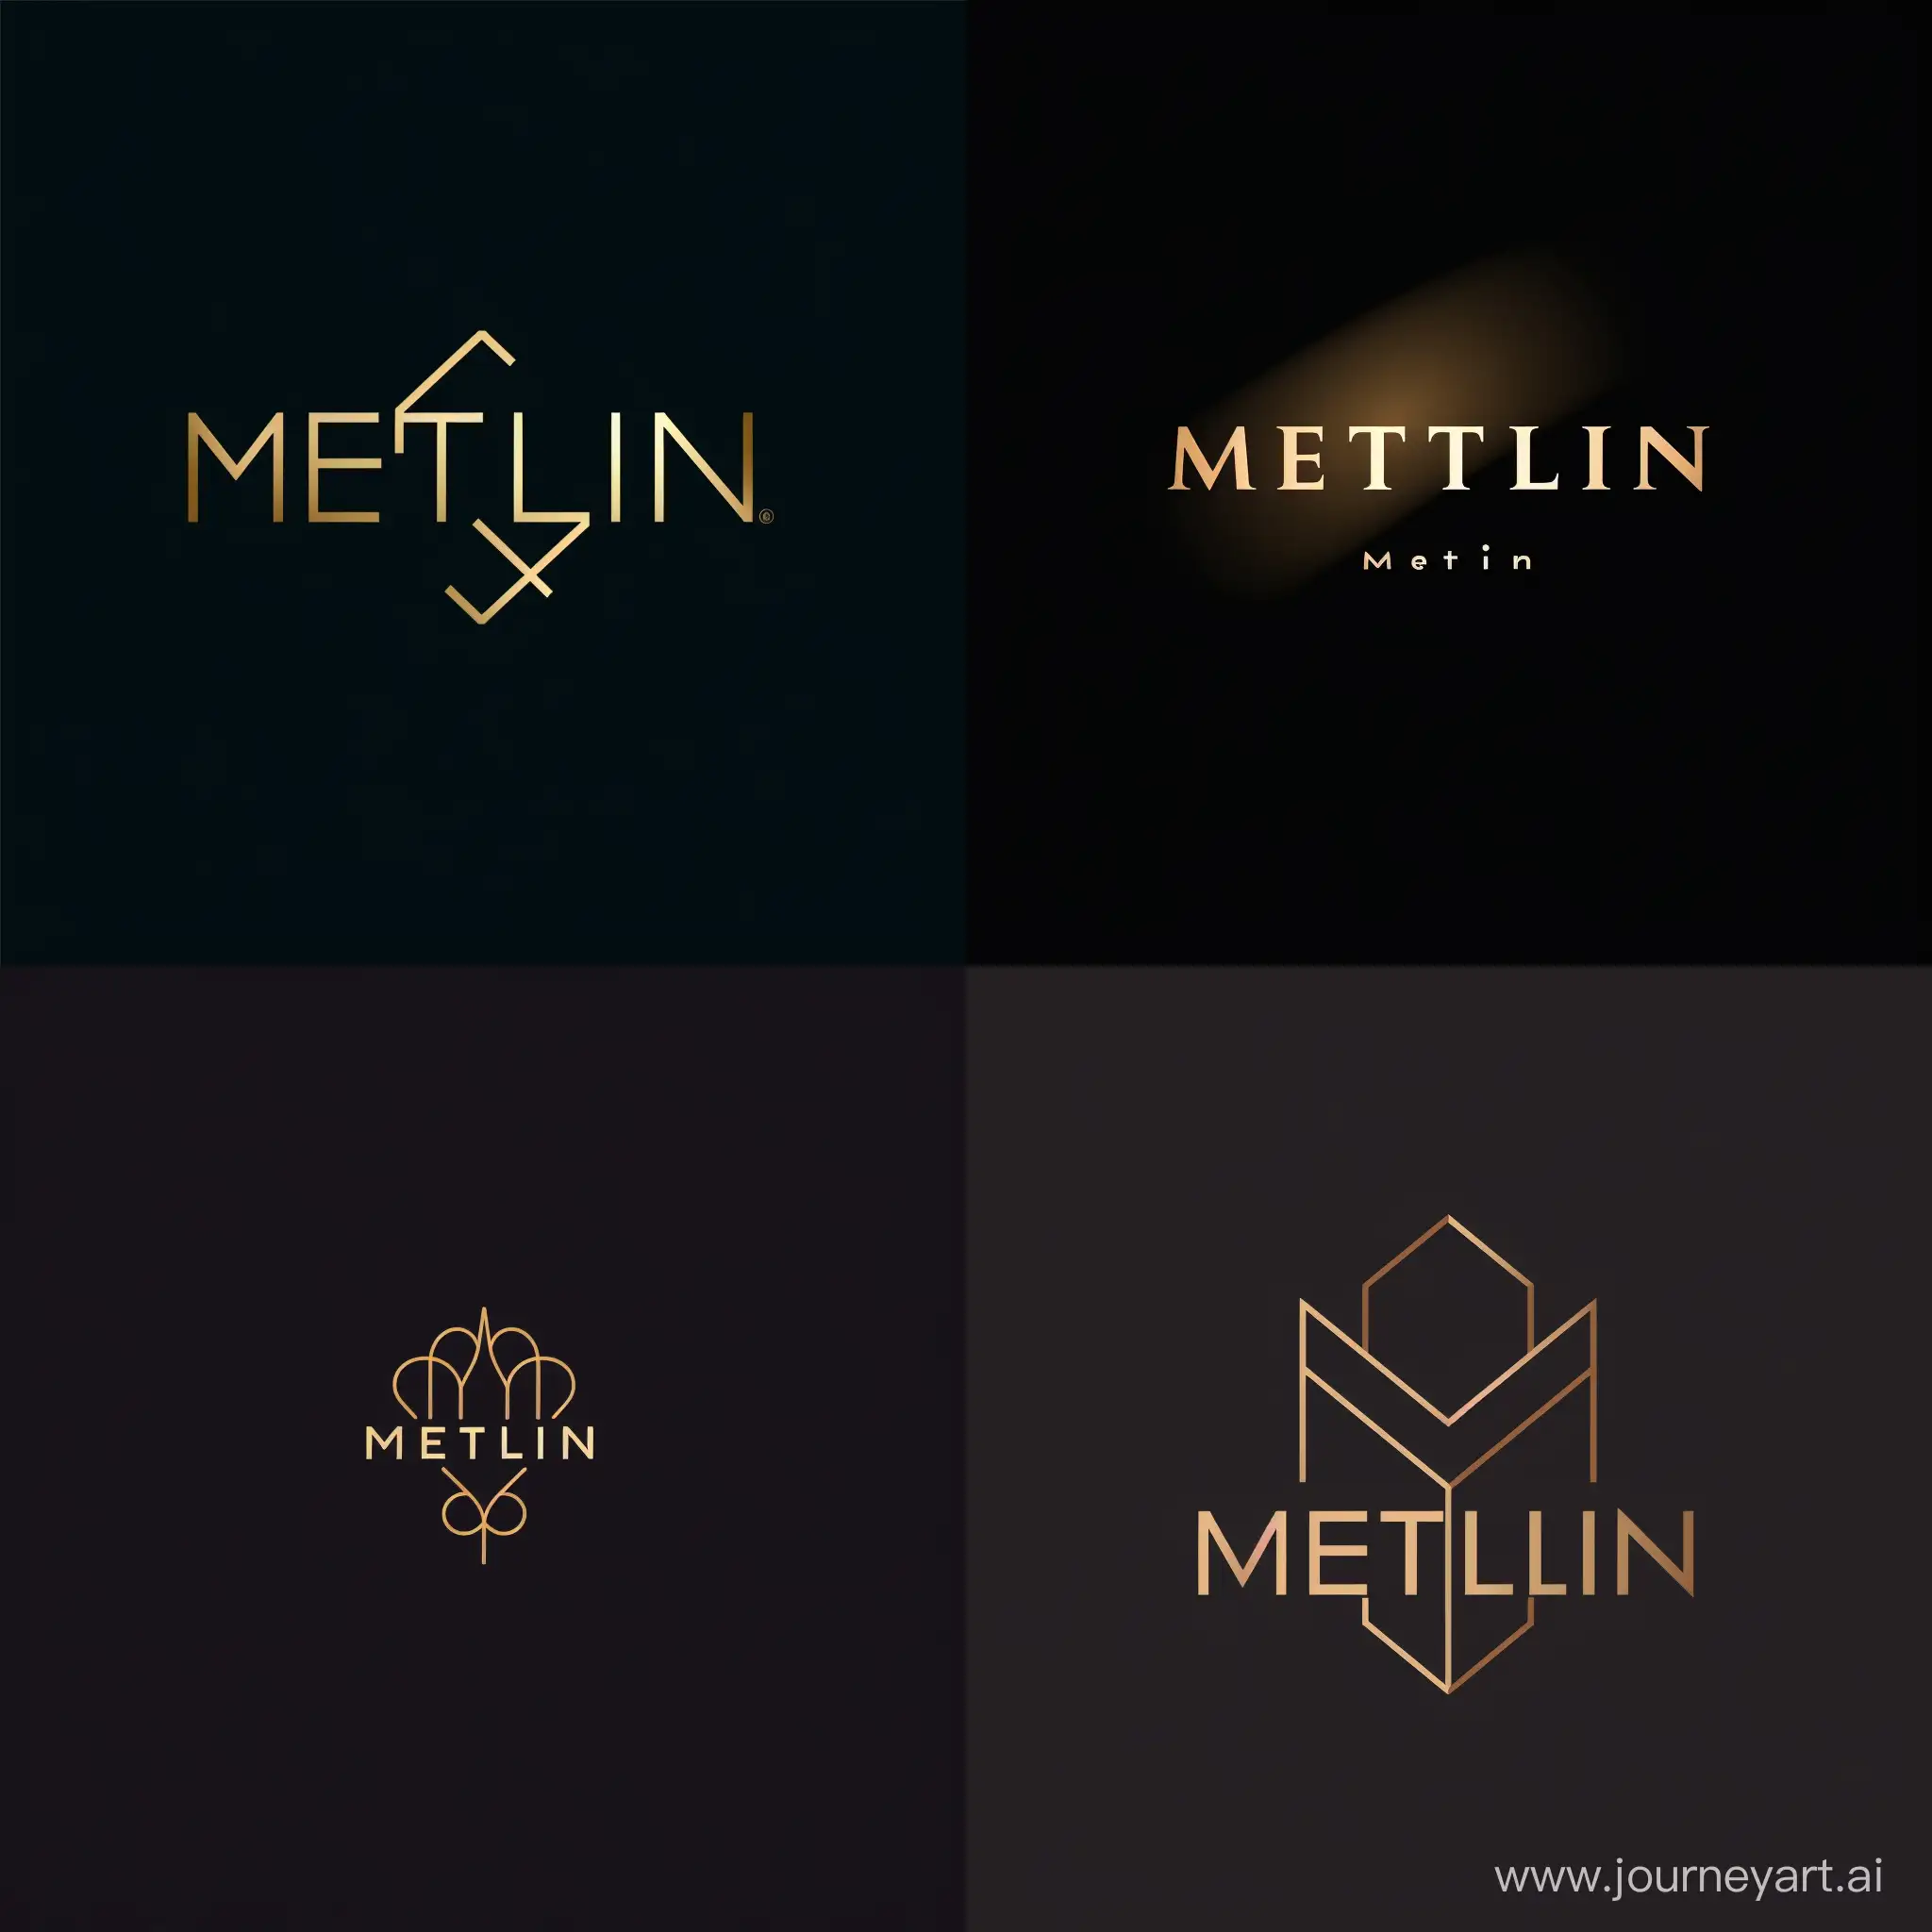 создай логотип с надписью Metlin